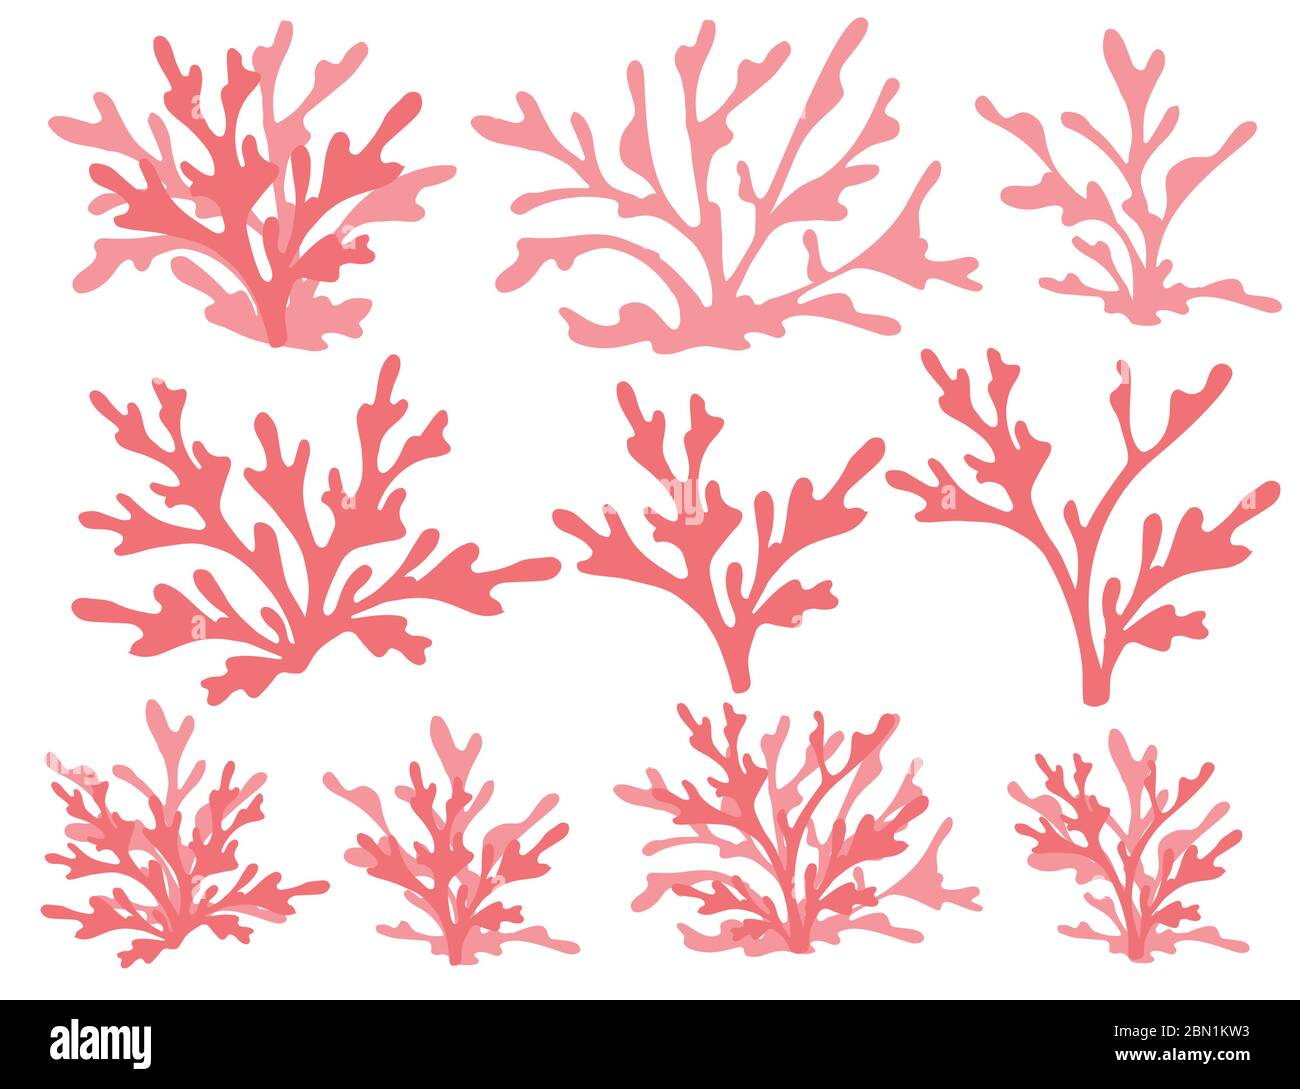 Ensemble de silhouettes d'algues rouges de corail illustration vectorielle plate isolée sur fond blanc Illustration de Vecteur